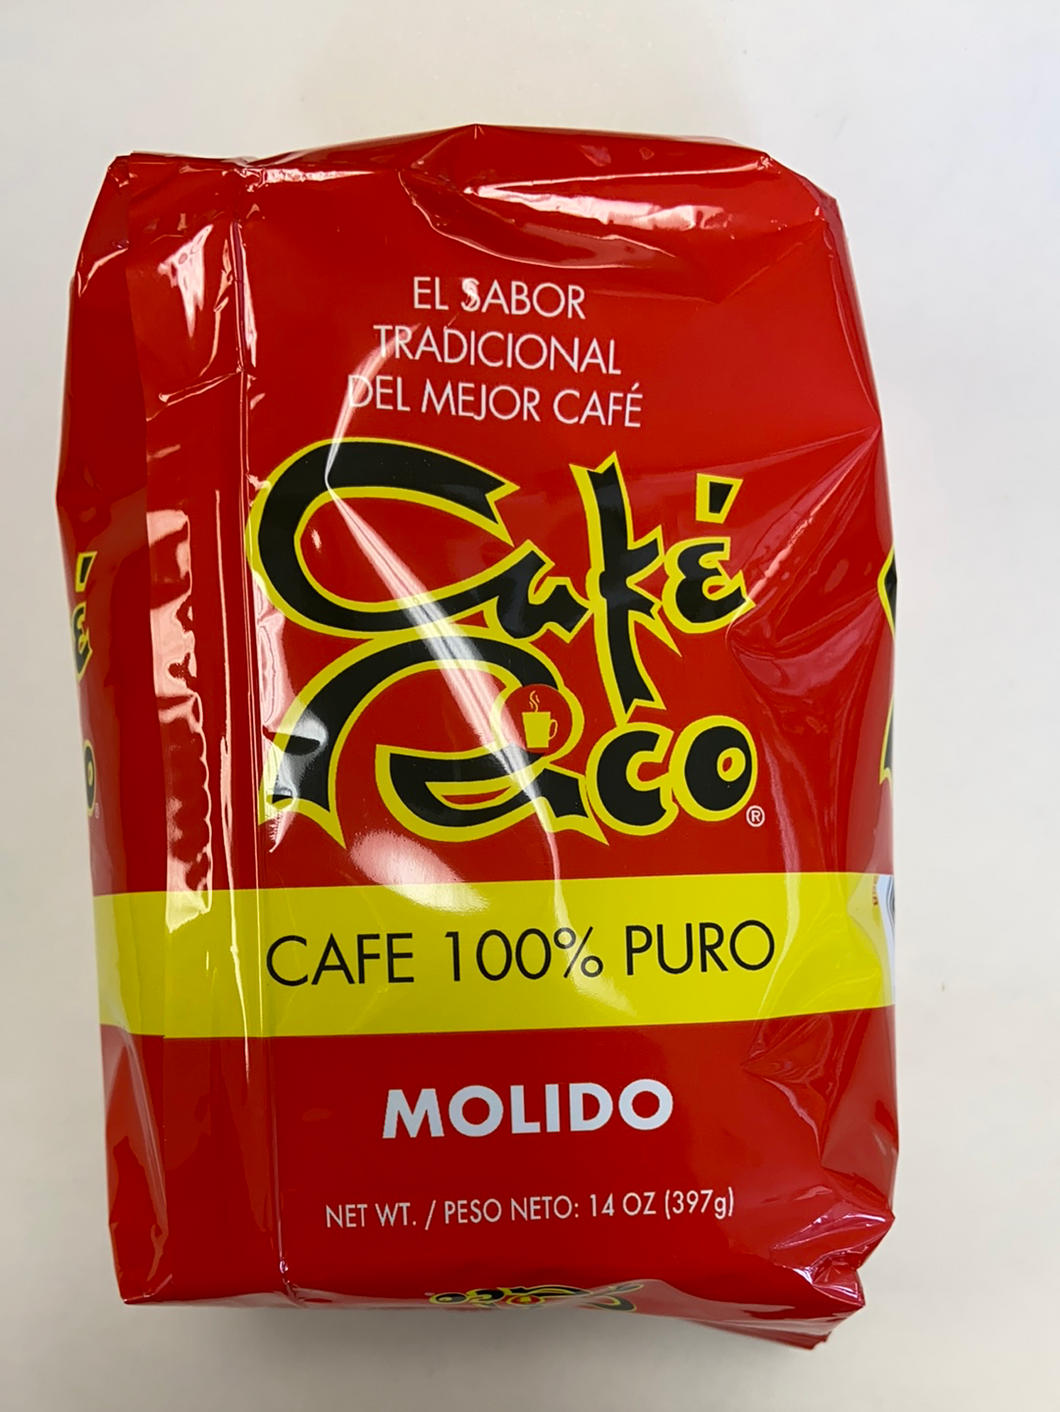 Molido, Café Rico, El Sabor